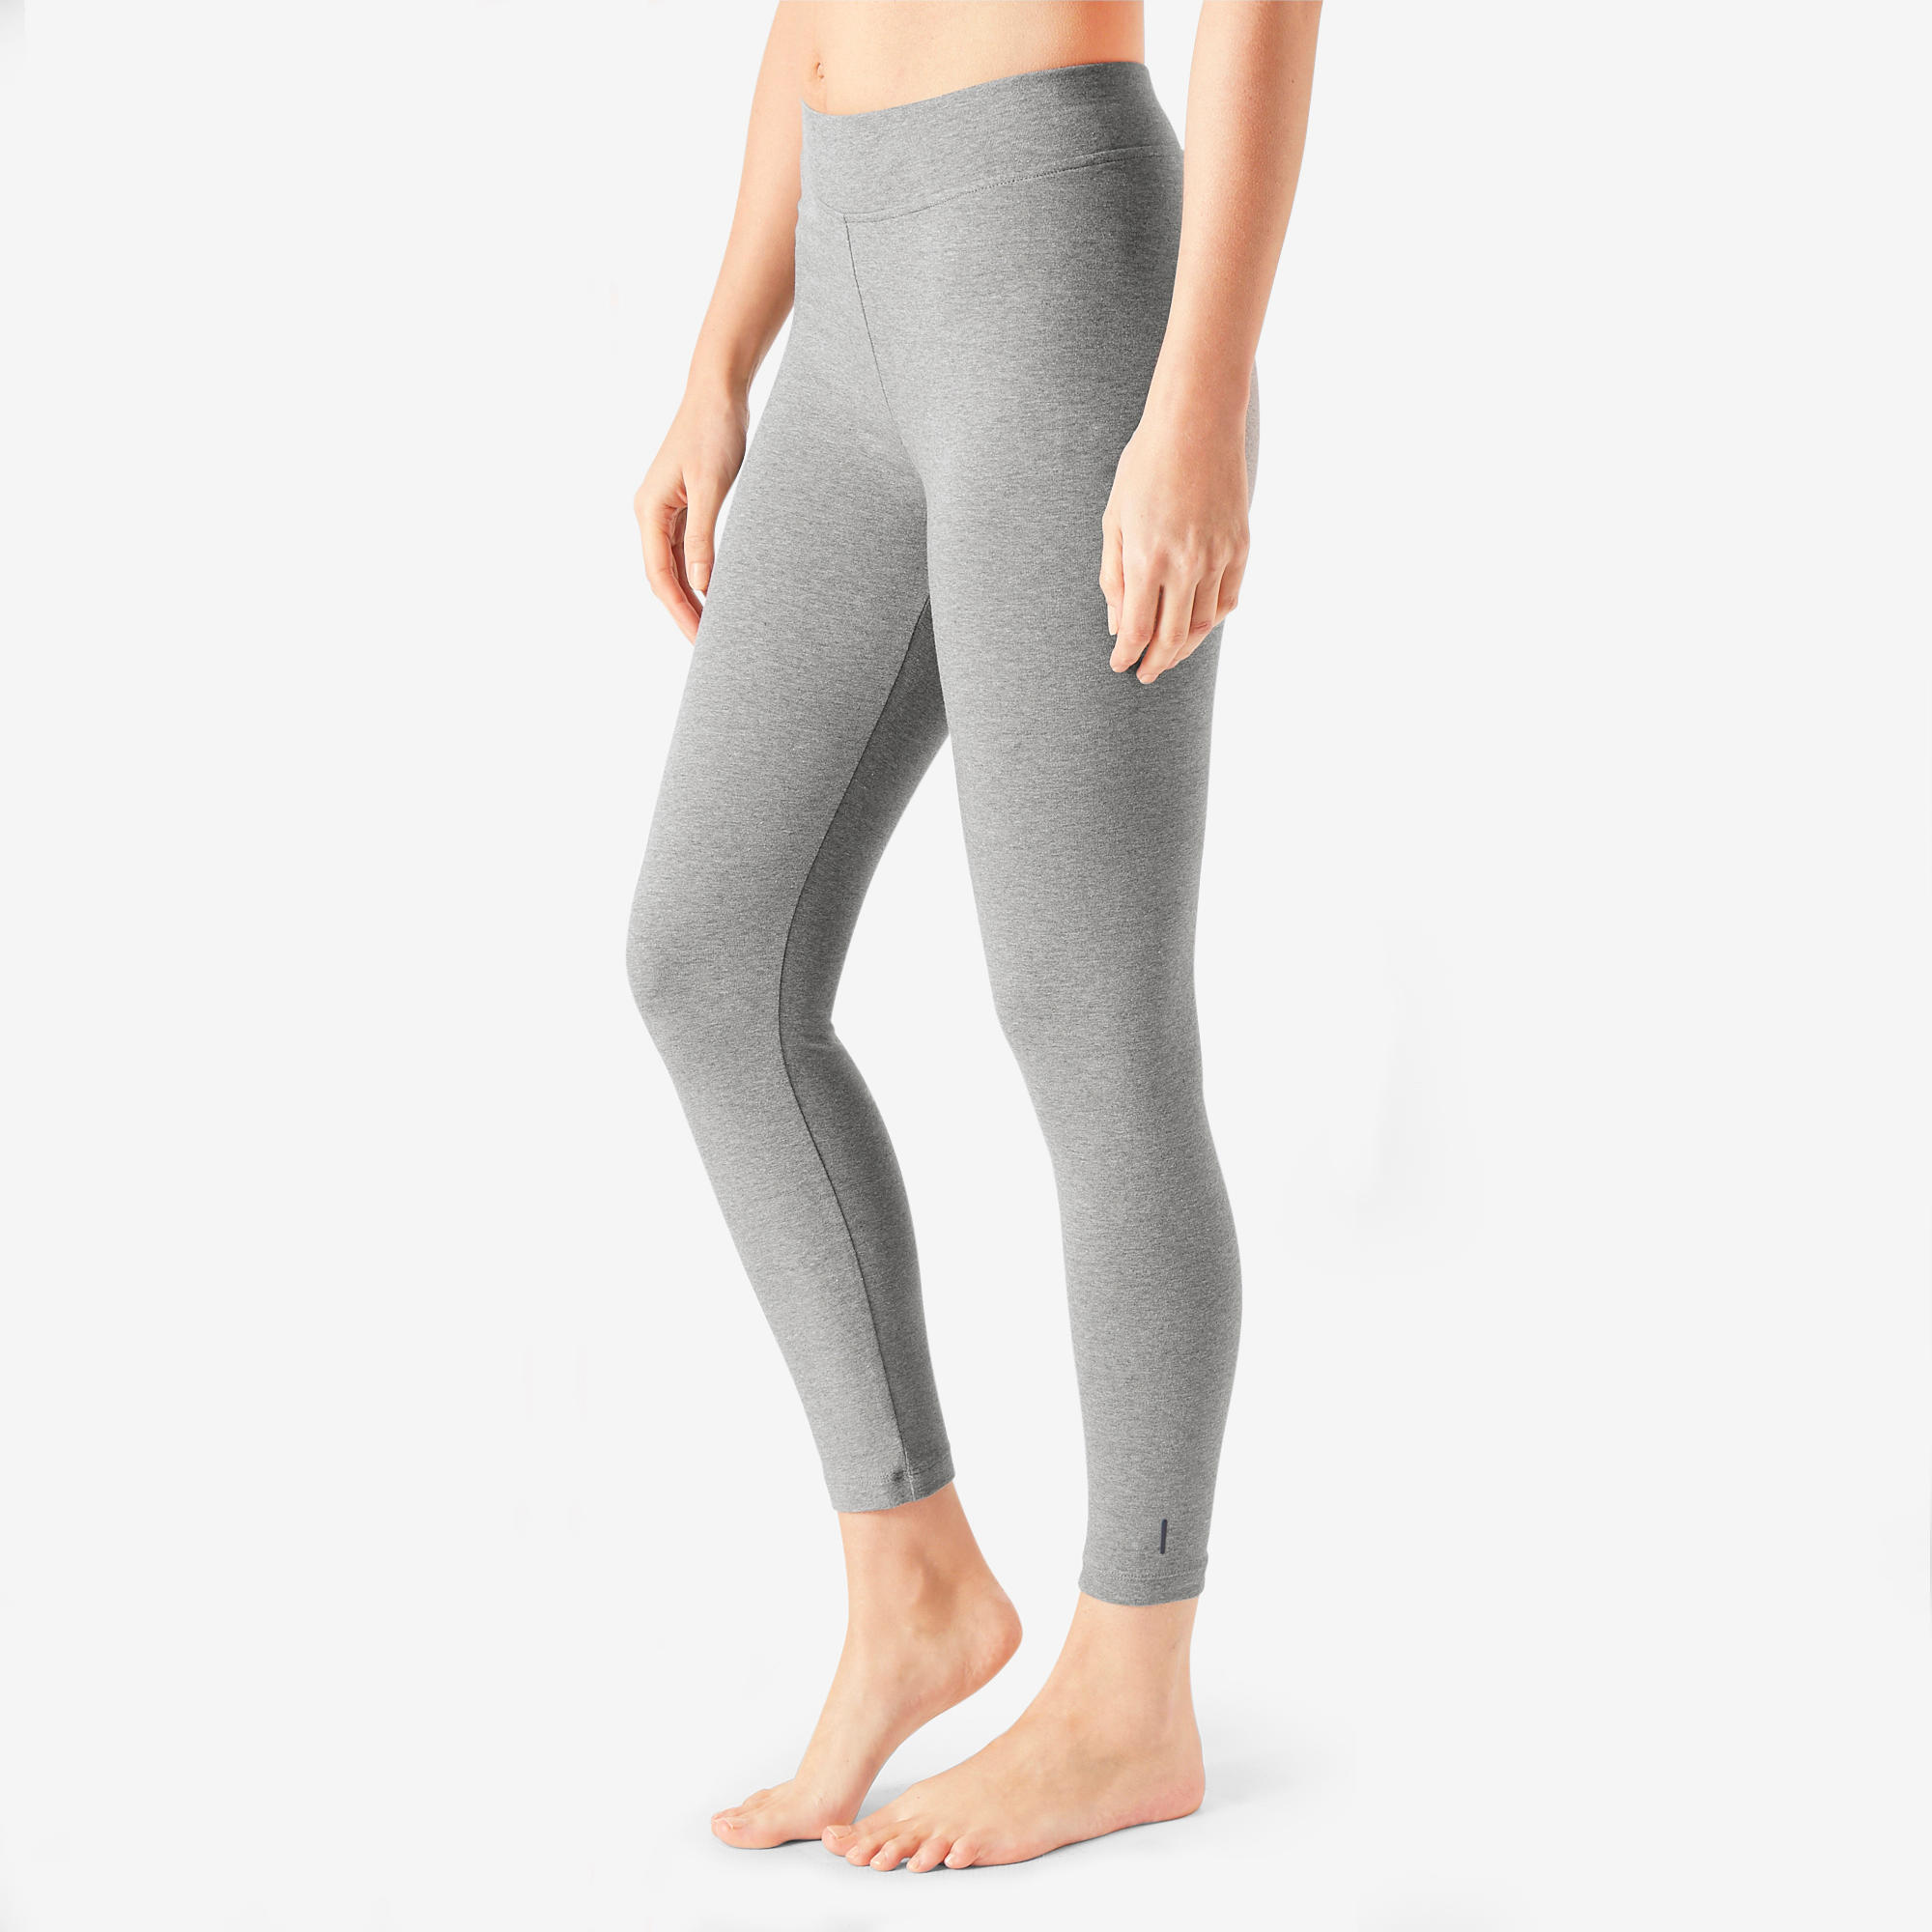 Decathlon Shape Booster Women's Fitness Cellulite Reduction Leggings Black  XS | eBay